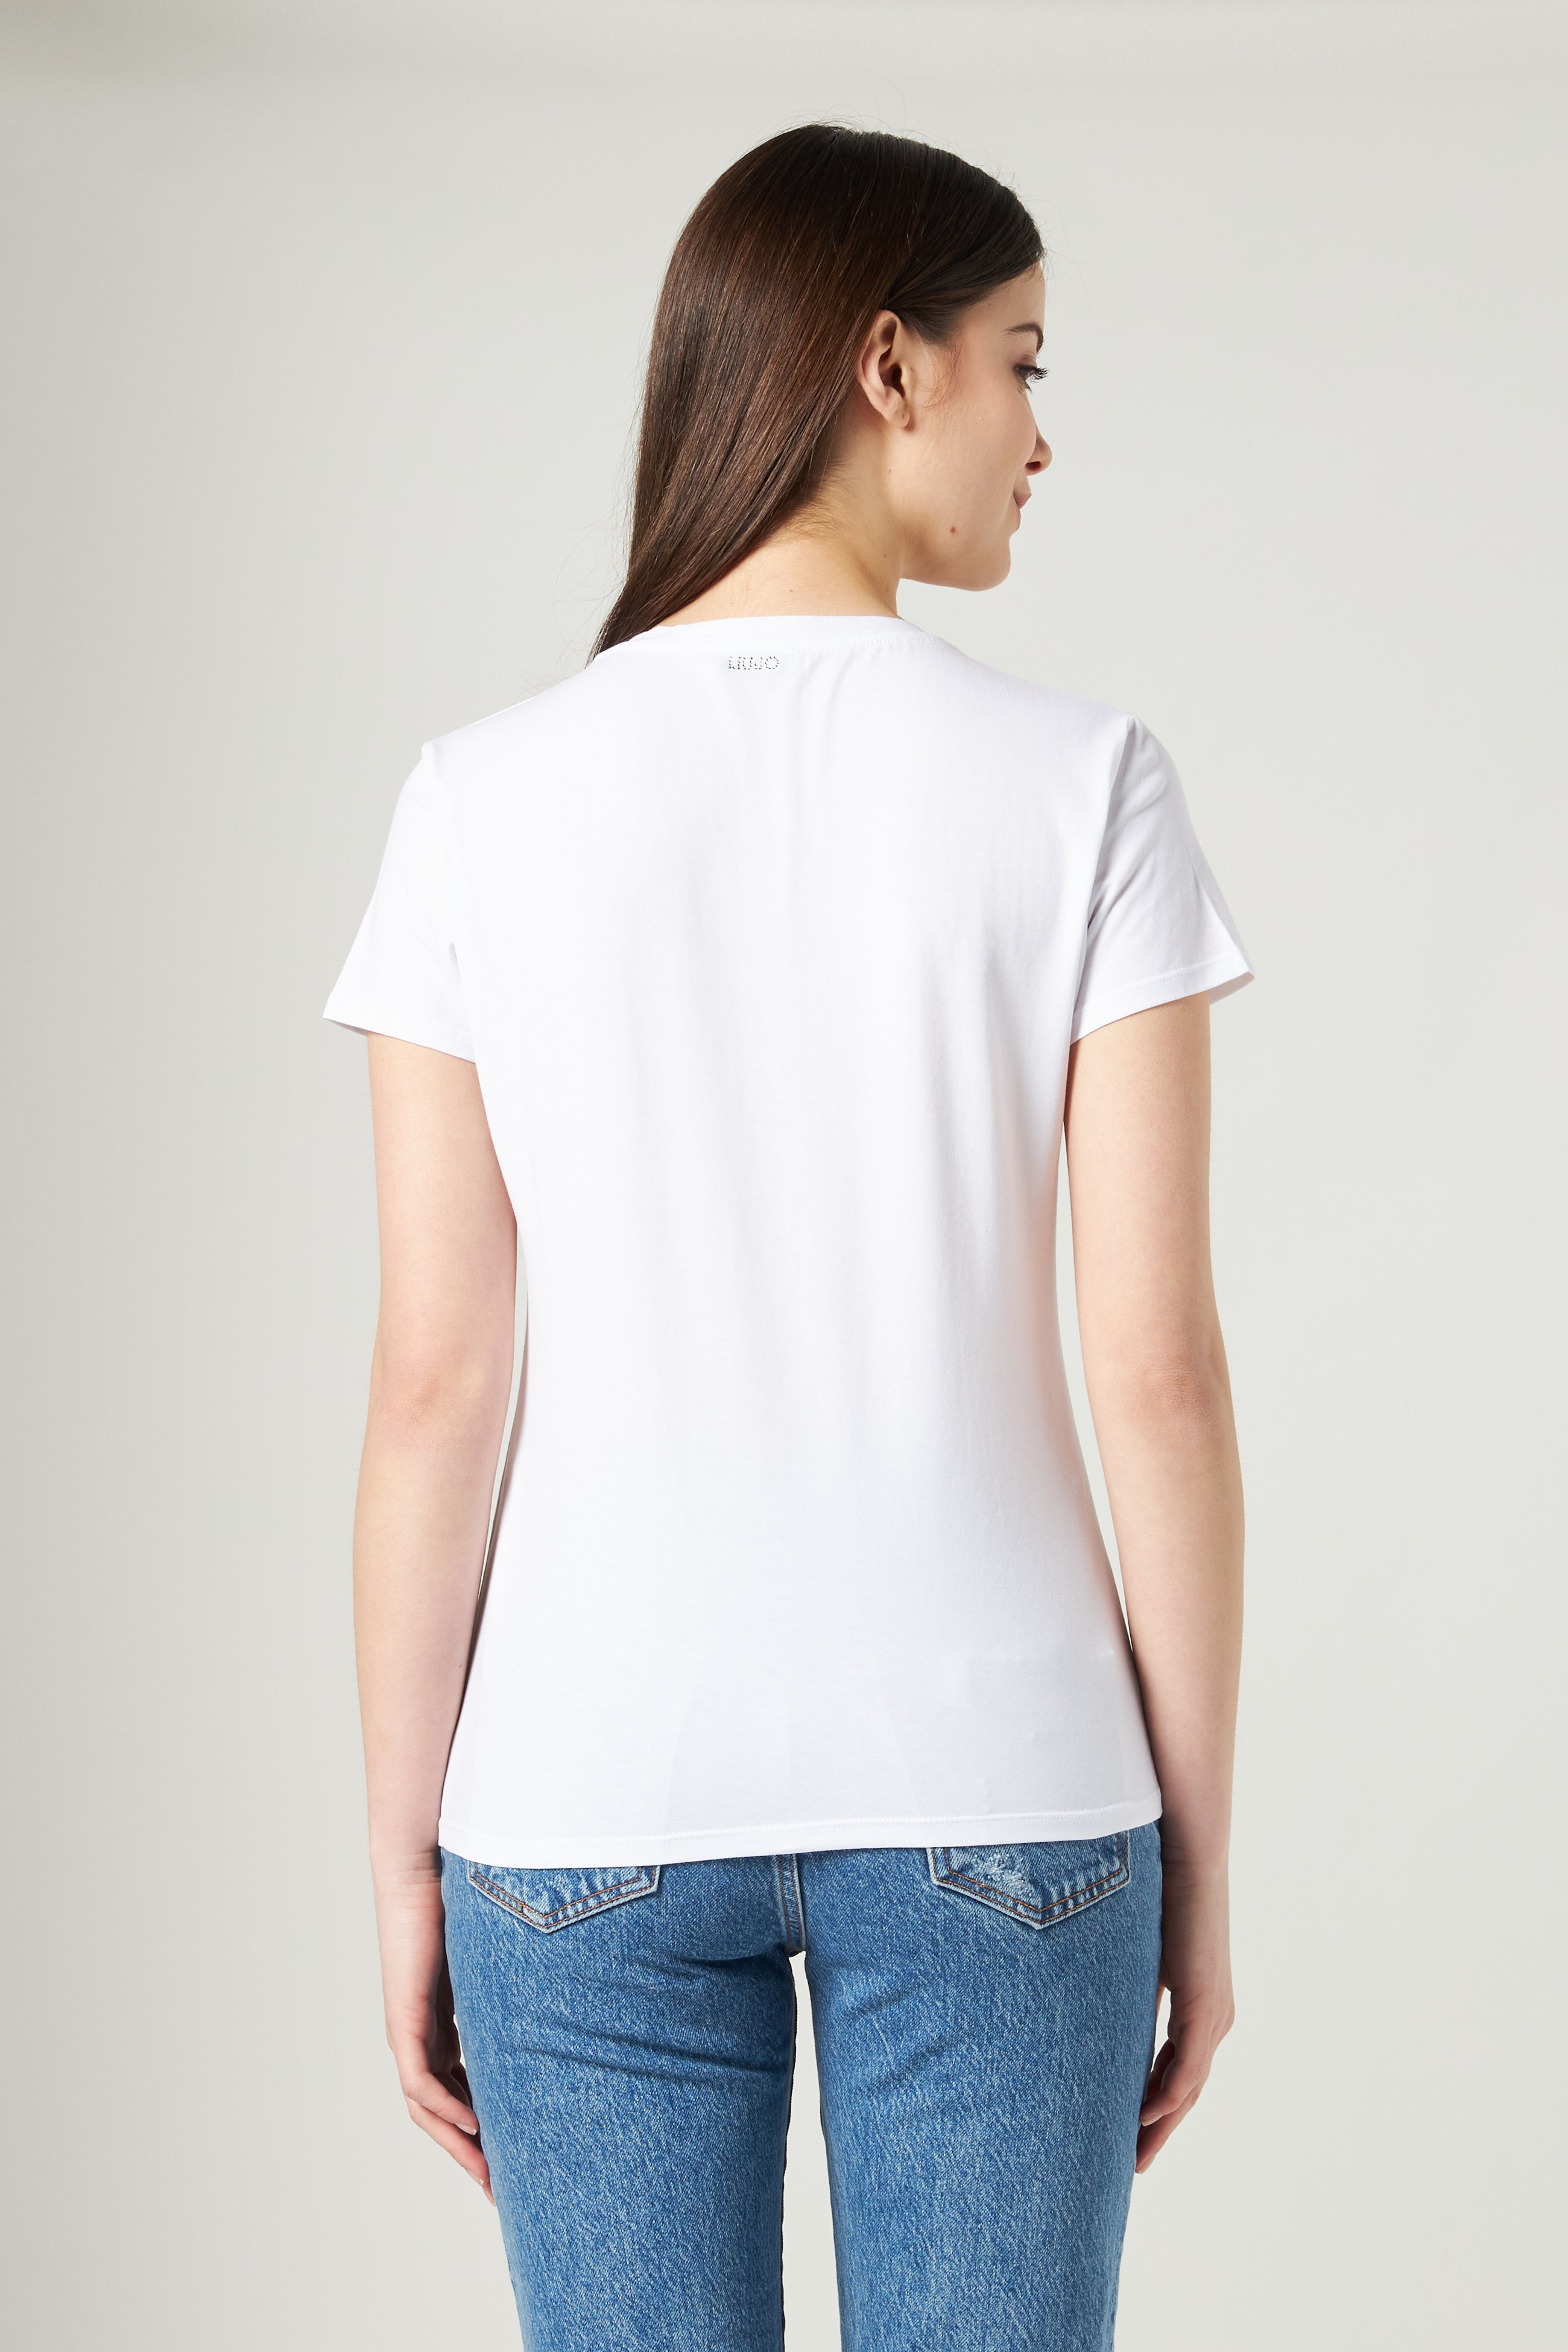 LIU JO Weißes T-Shirt mit M-Print